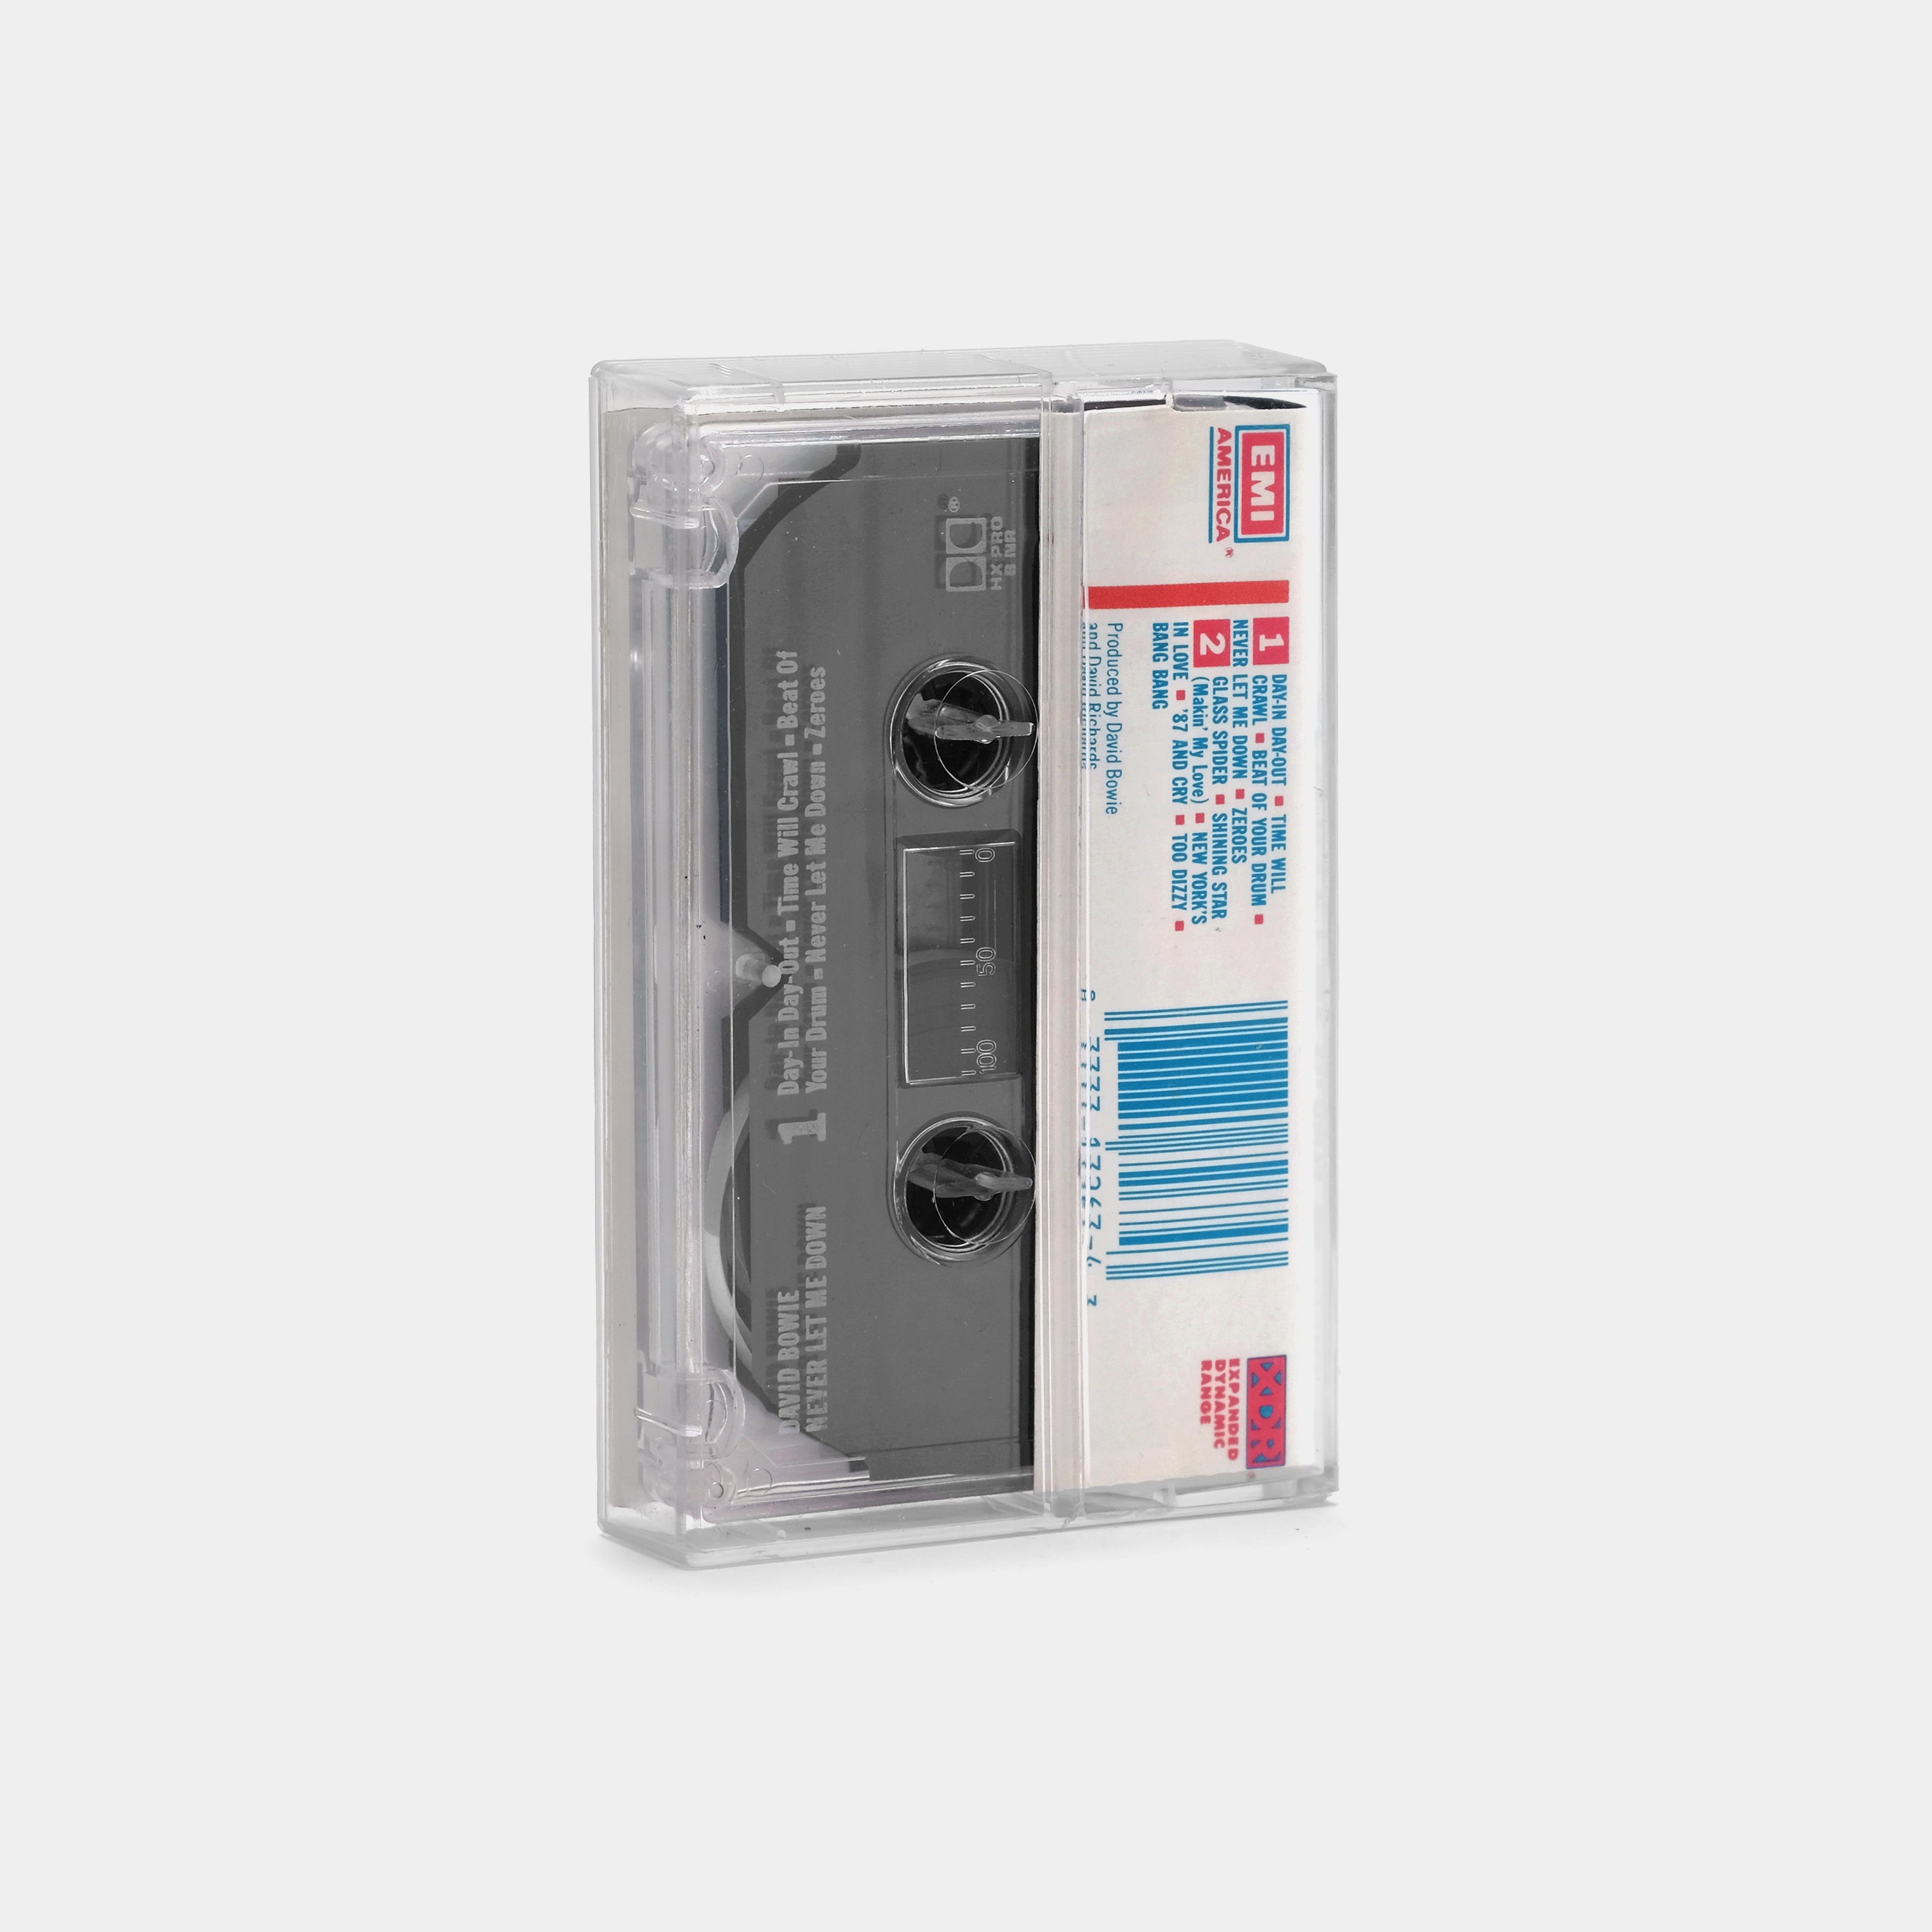 David Bowie - Never Let Me Down Cassette Tape